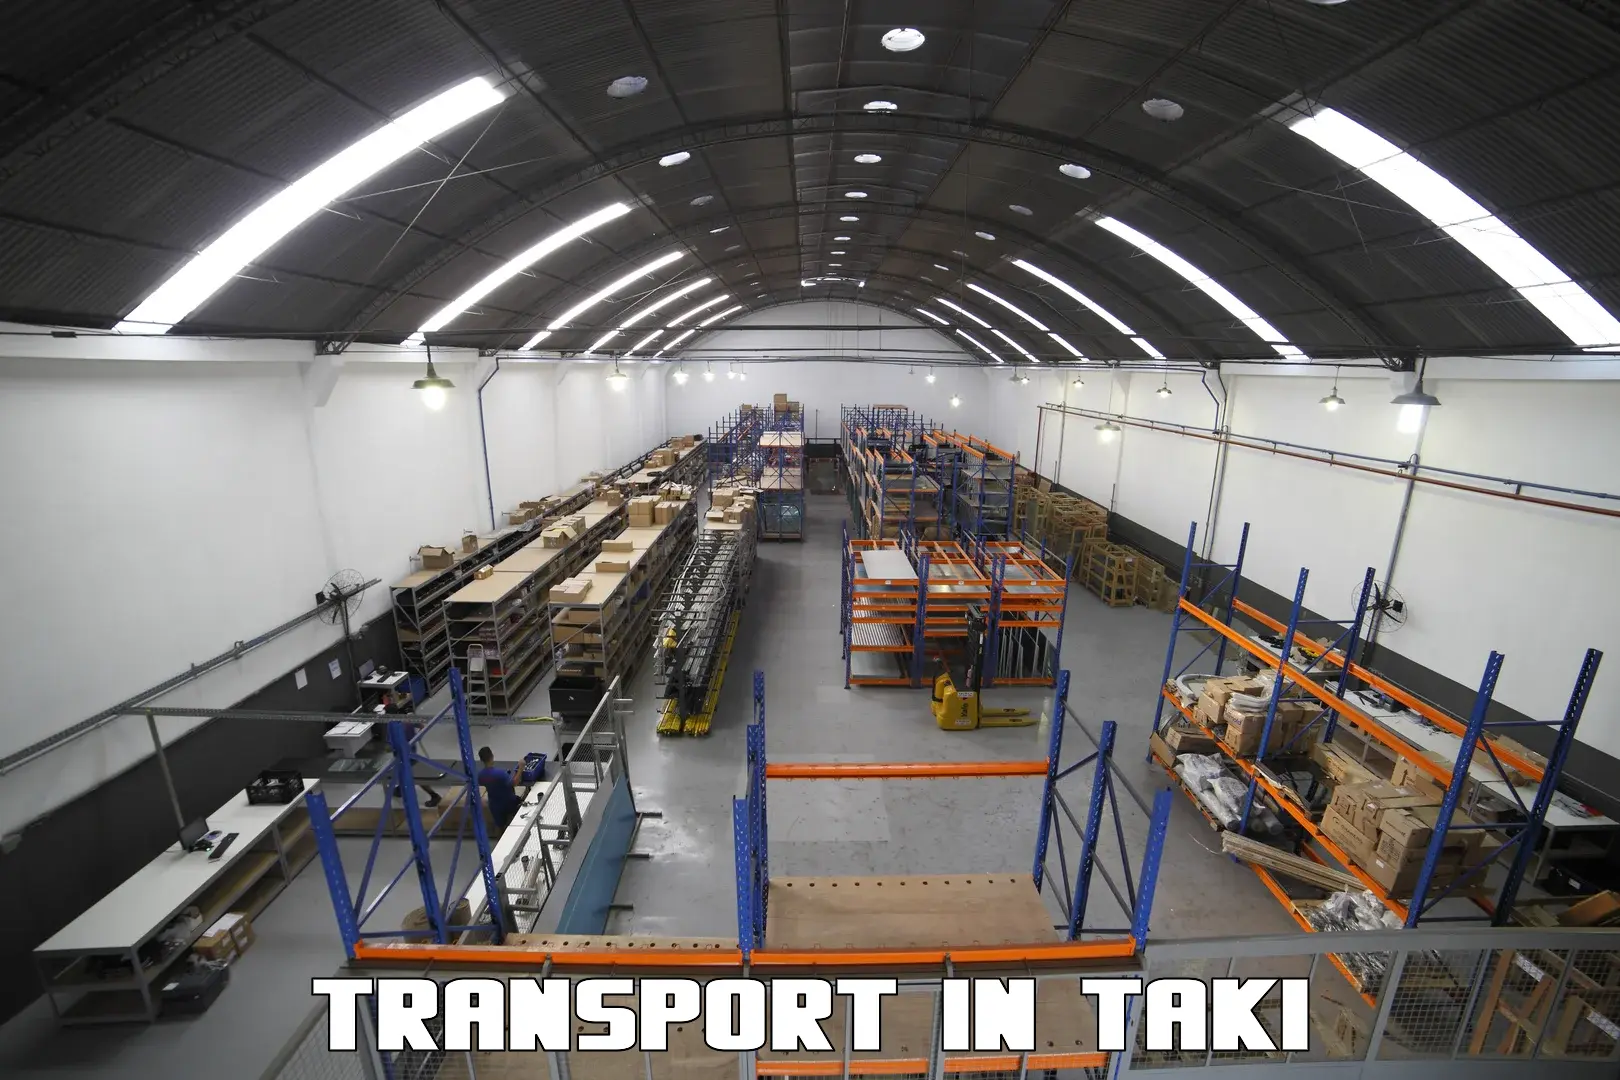 Container transport service in Taki